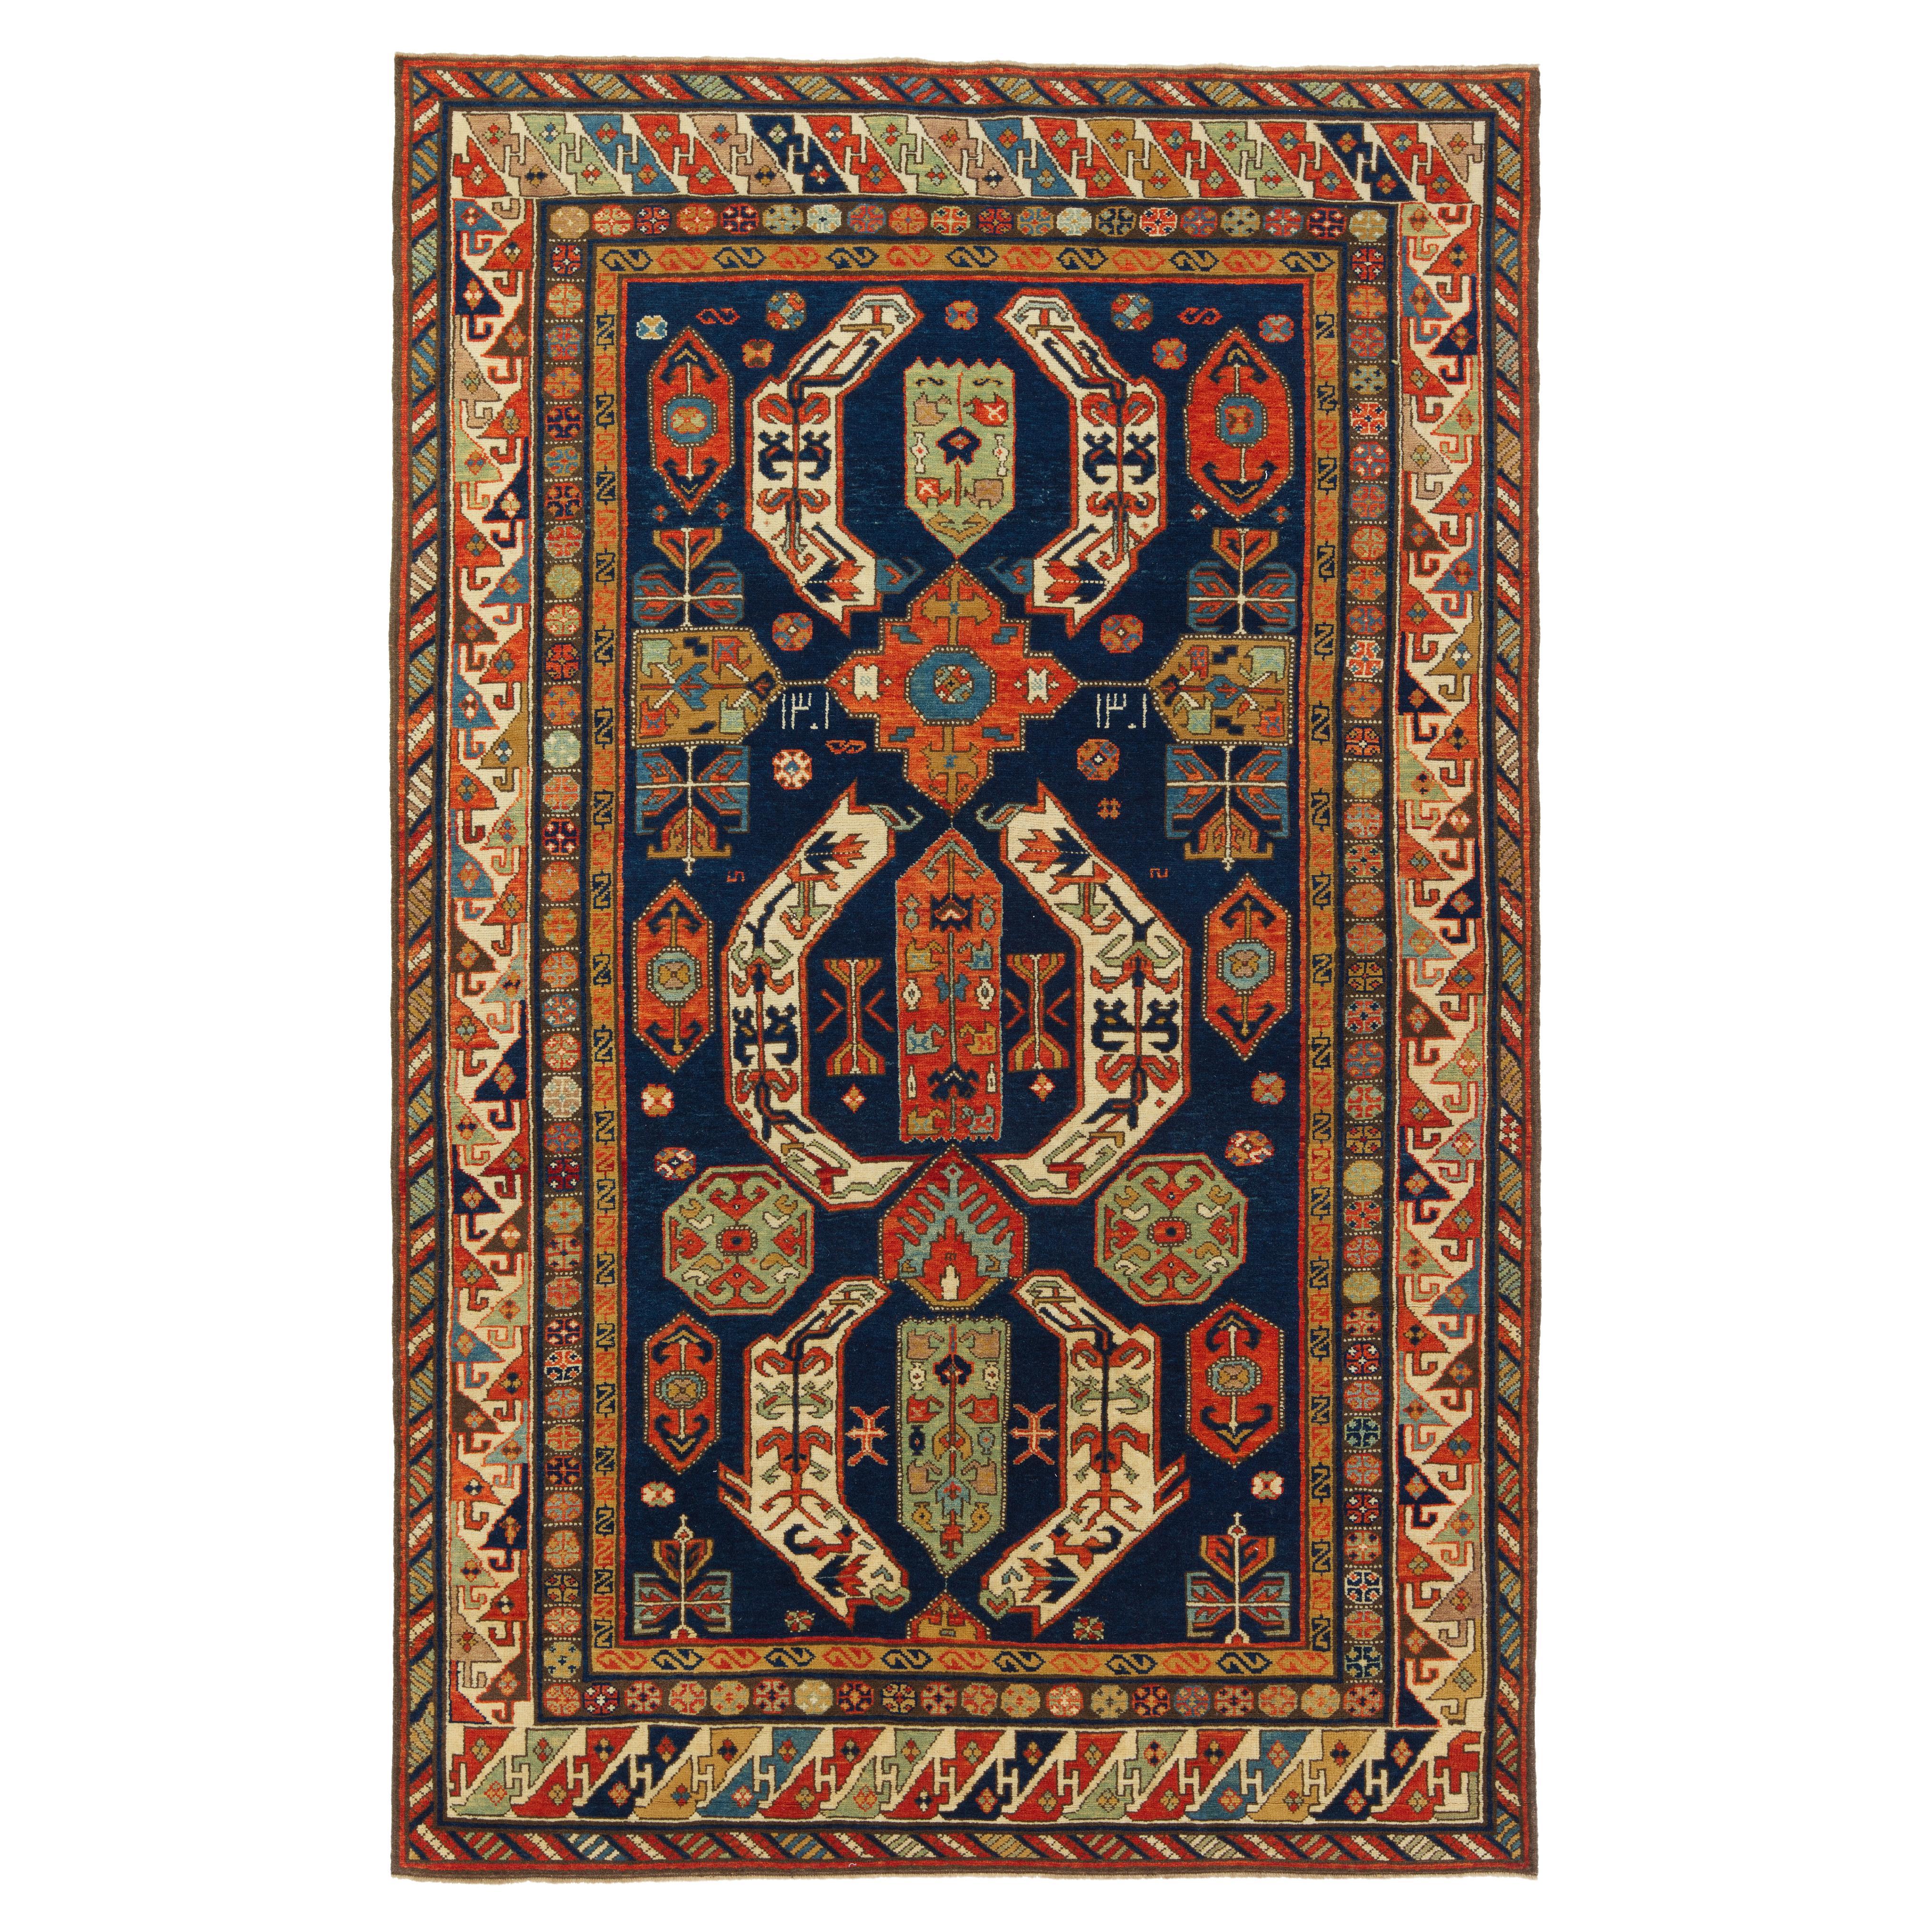 Ararat Rugs Lenkoran Rug Caucasian Revival 19 Century Carpet, Natural Dyed